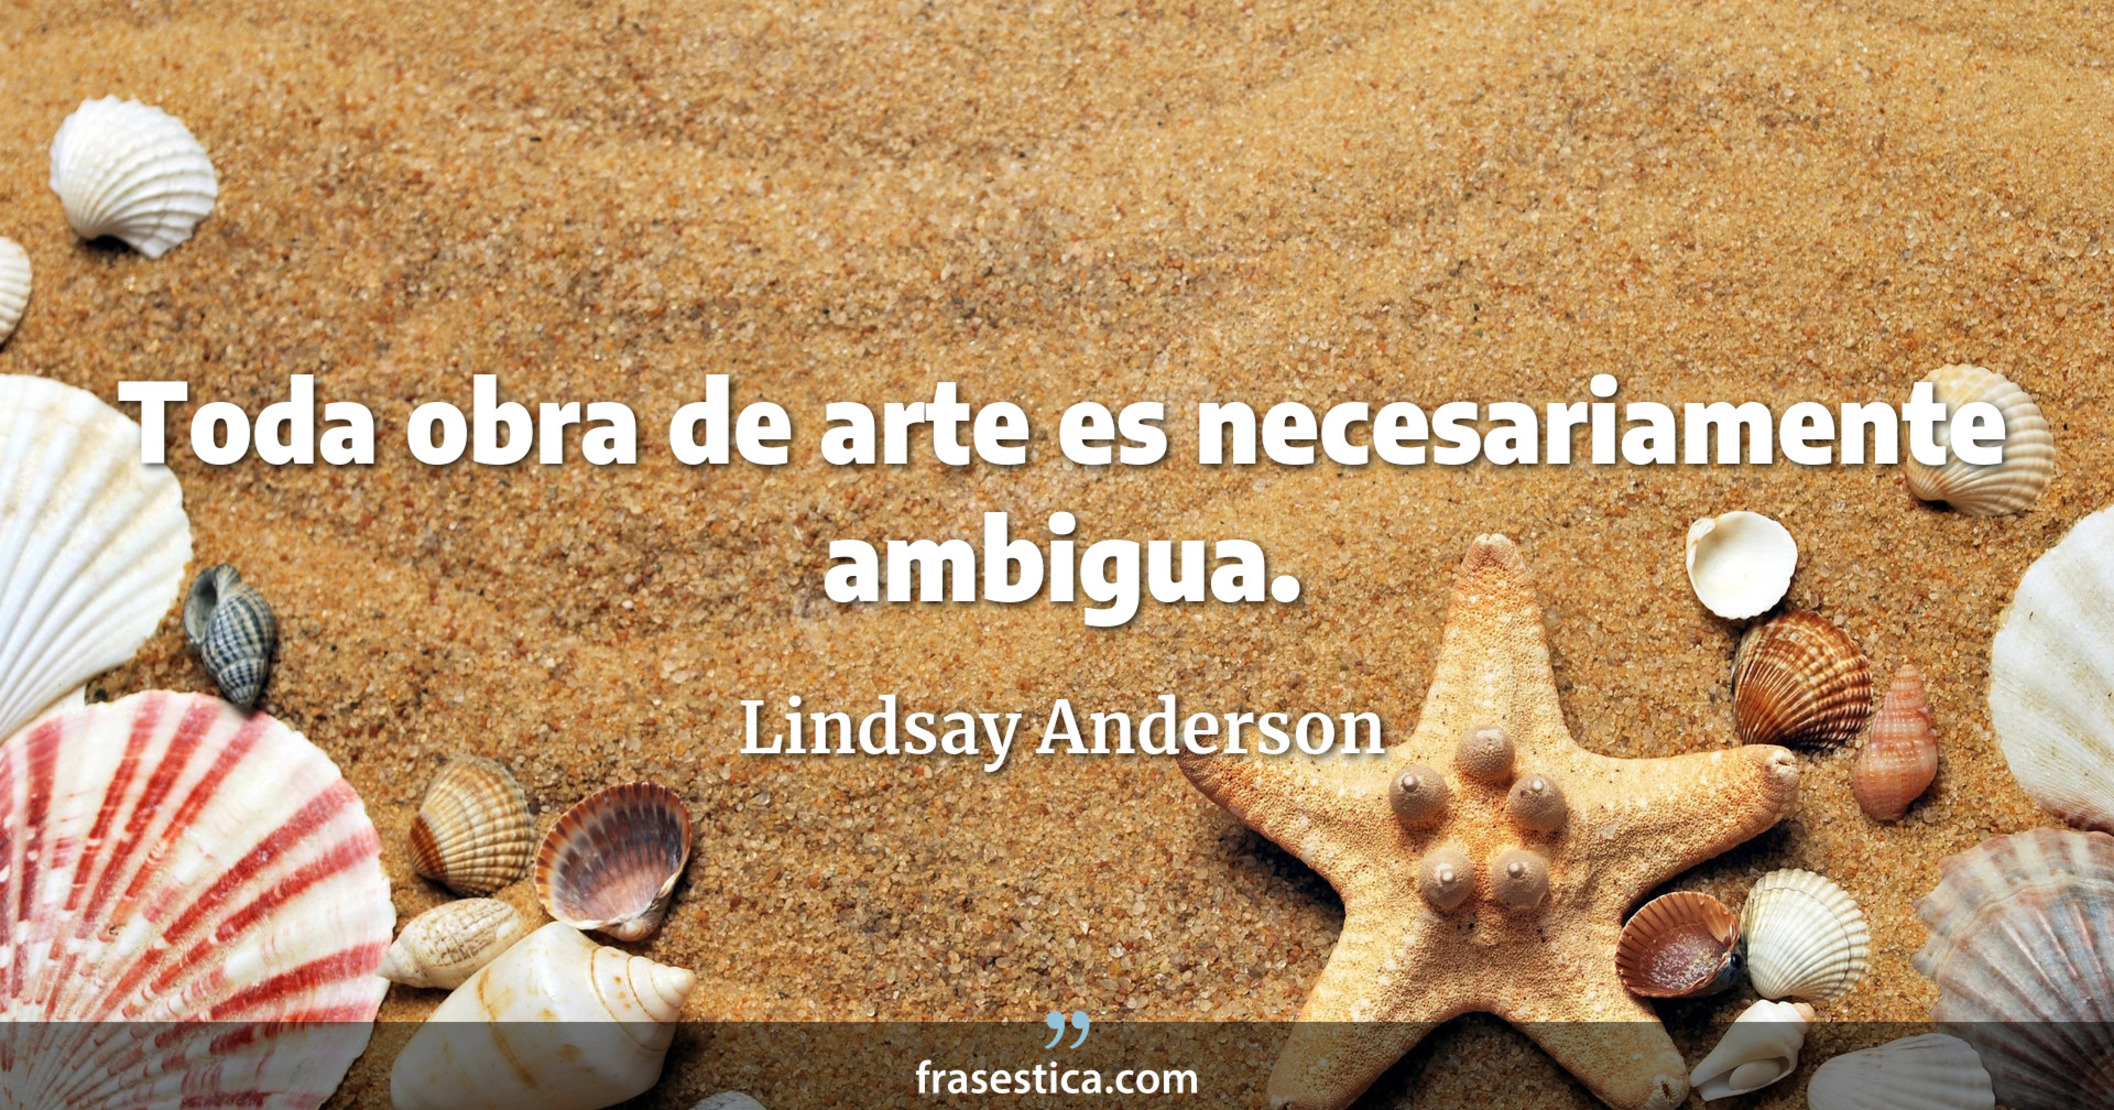 Toda obra de arte es necesariamente ambigua. - Lindsay Anderson